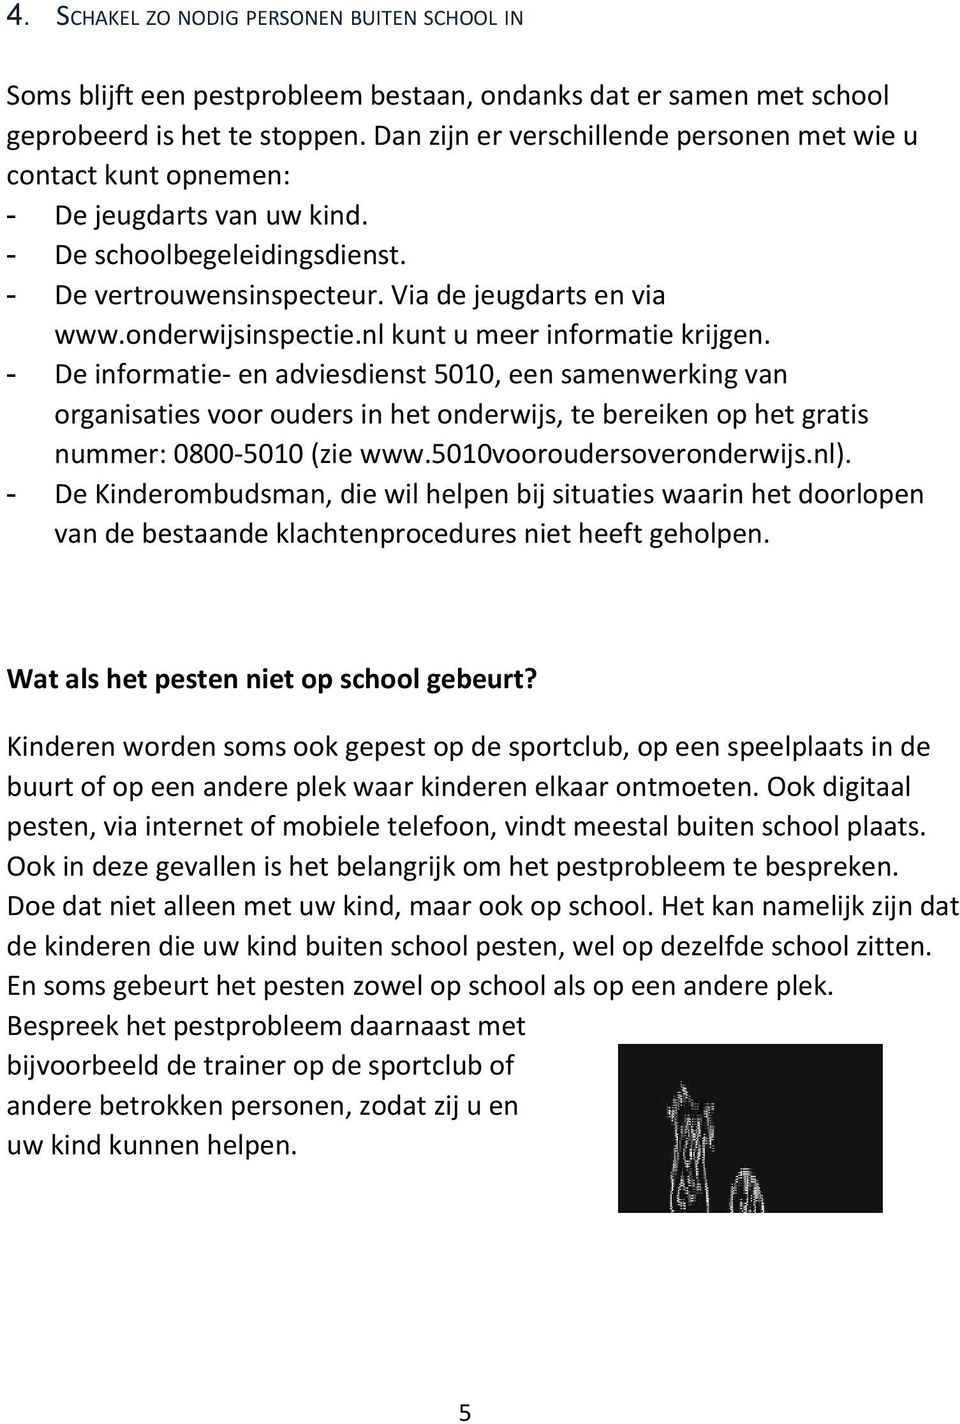 onderwijsinspectie.nl kunt u meer informatie krijgen.